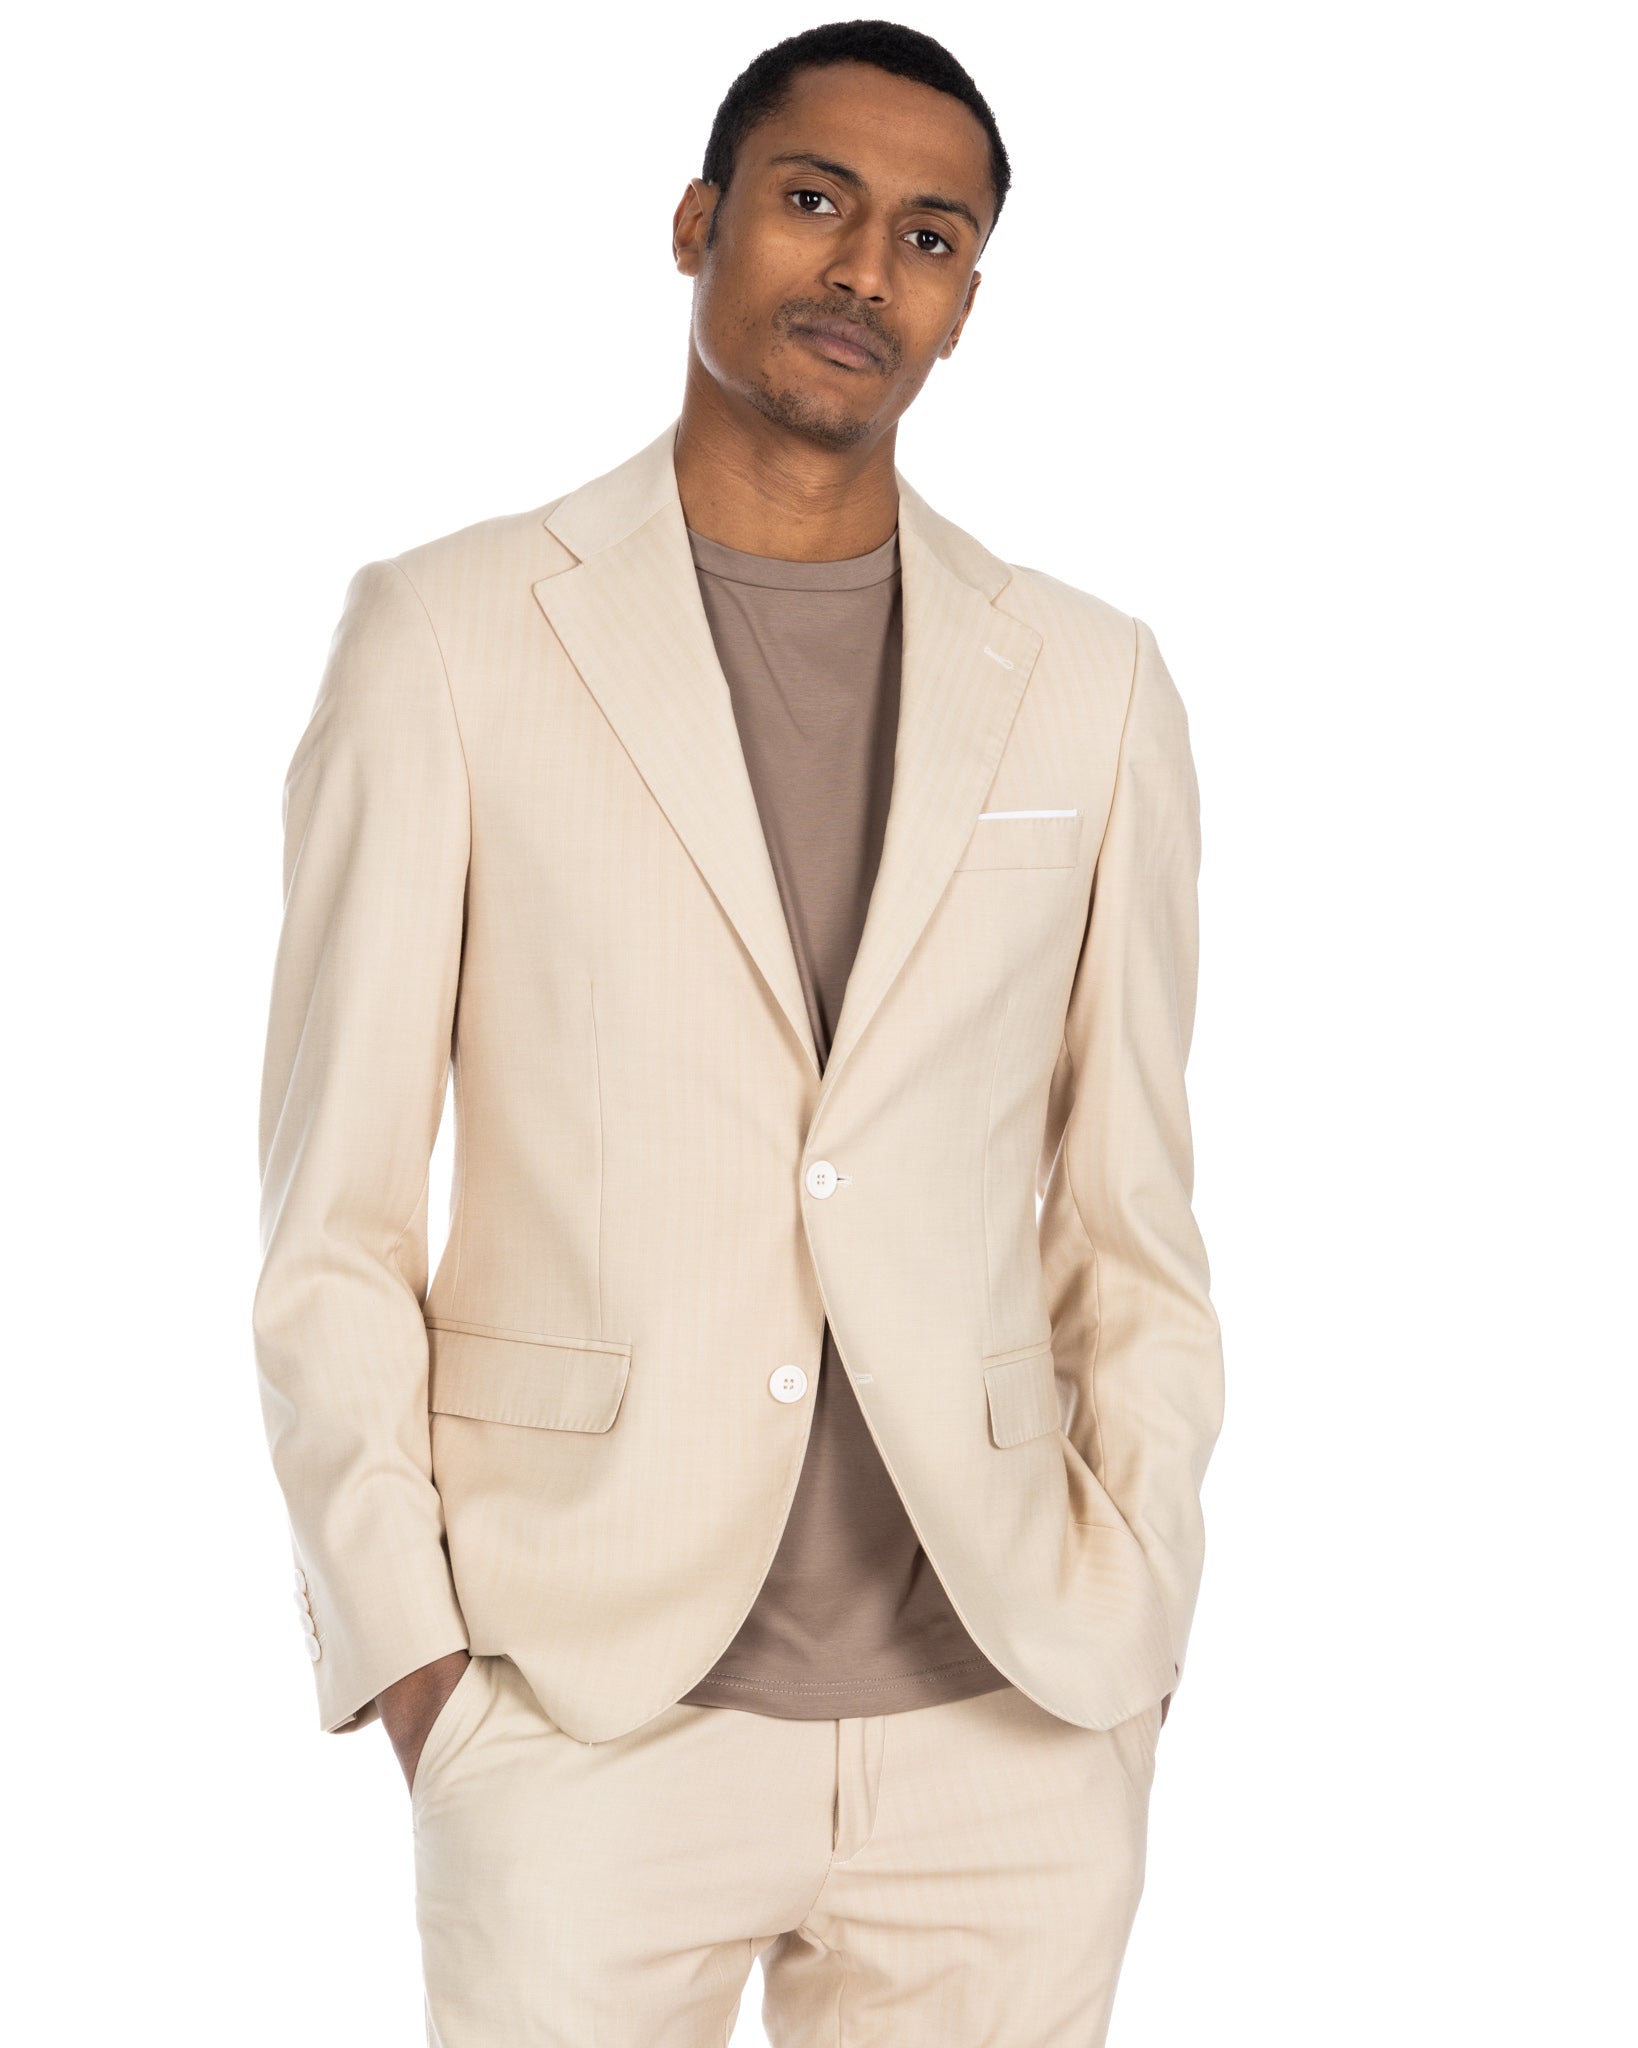 Paris - light beige solaro single-breasted suit